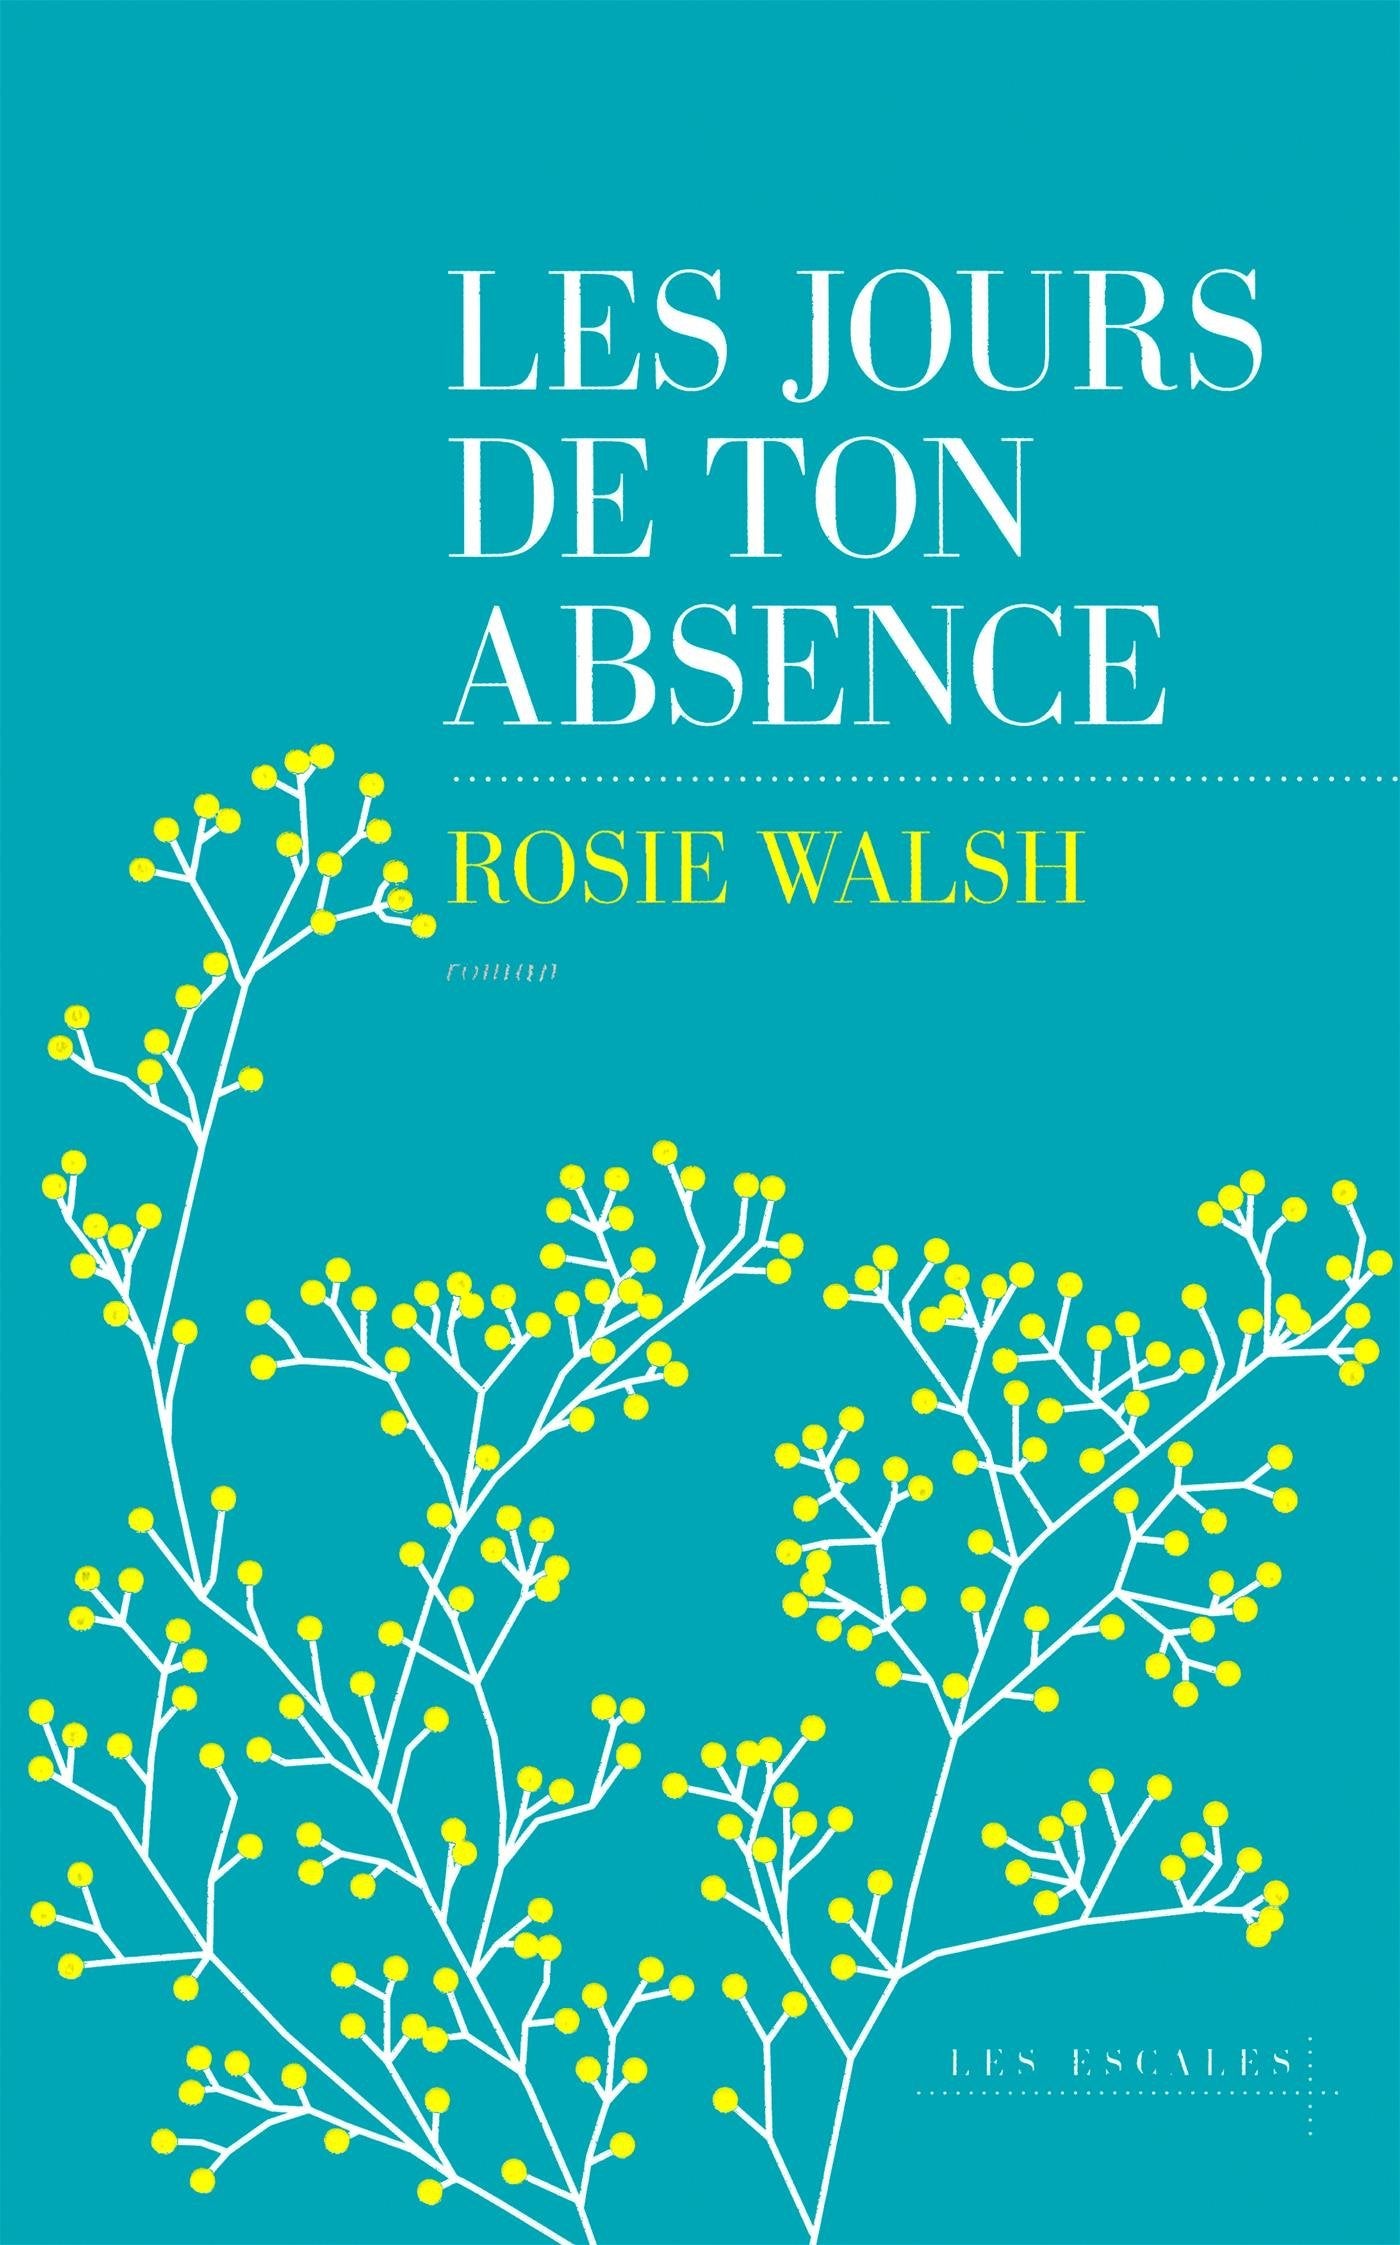 Les jours de ton absence - Rosie Wlash